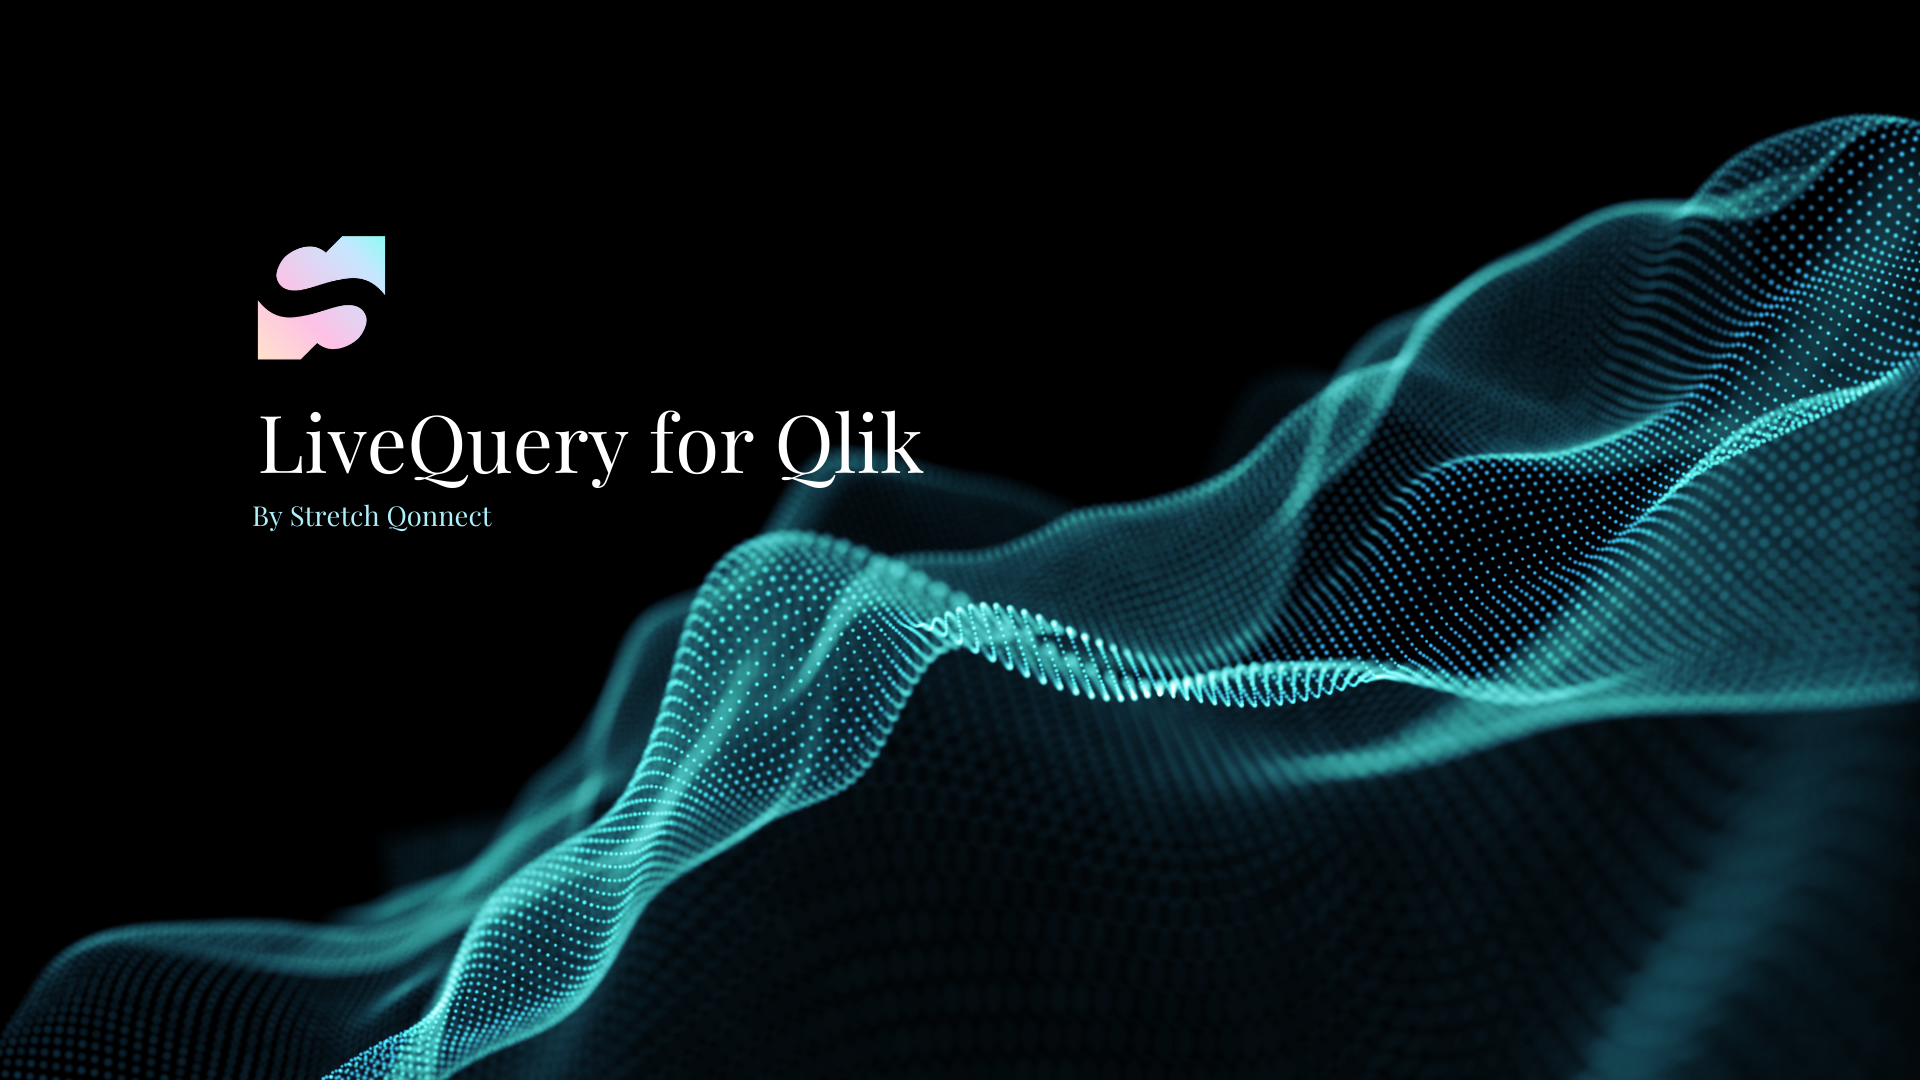 Nếu bạn muốn chuyển đổi từ QlikView sang Qlik Sense, hãy xem hình ảnh liên quan để tìm hiểu thêm về quá trình đưa Qlik Sense vào hoạt động. Việc thực hiện chính sách của bạn sẽ dễ dàng hơn nhiều khi bạn hiểu cách triển khai Qlik Sense trực tuyến.